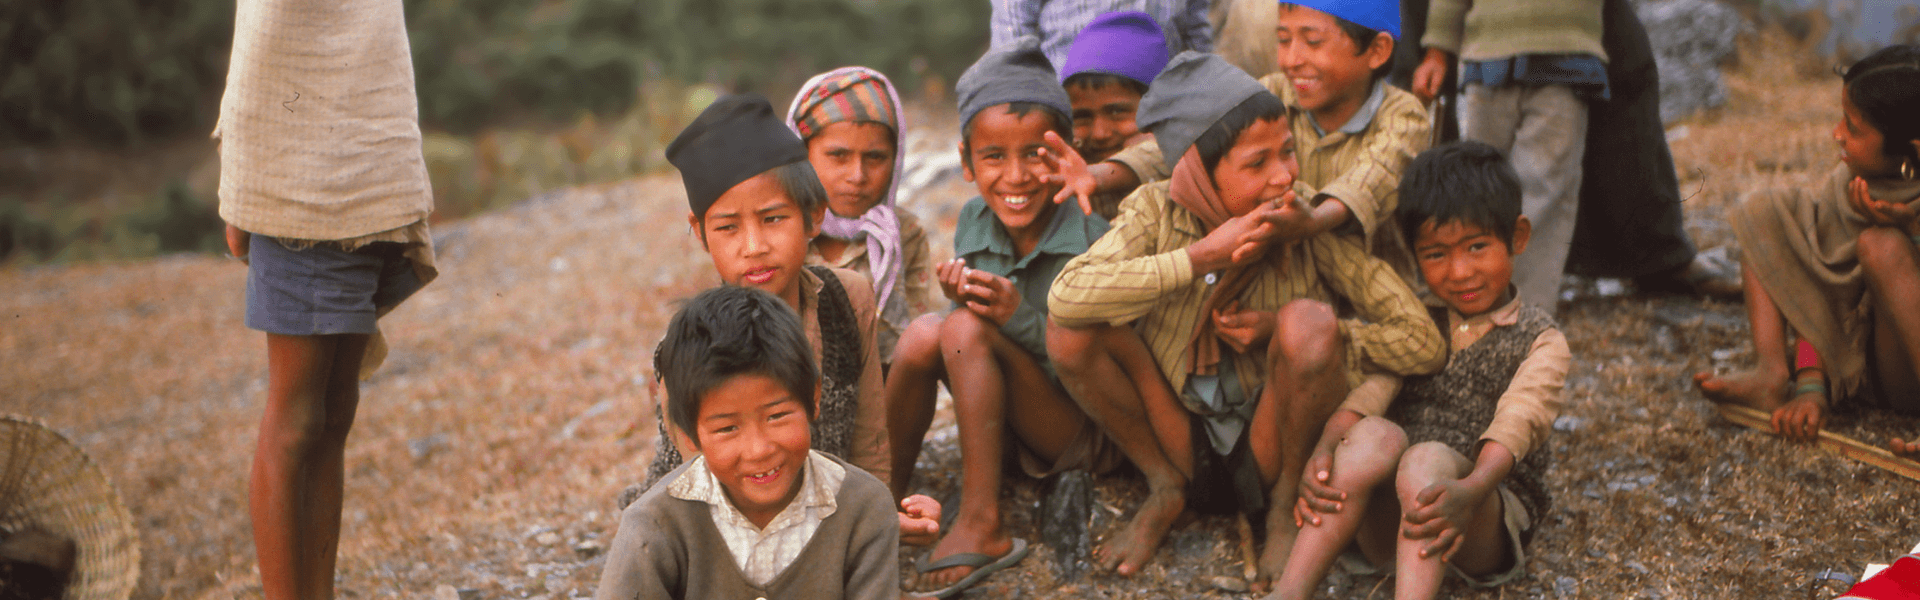 ילדים בנפאל